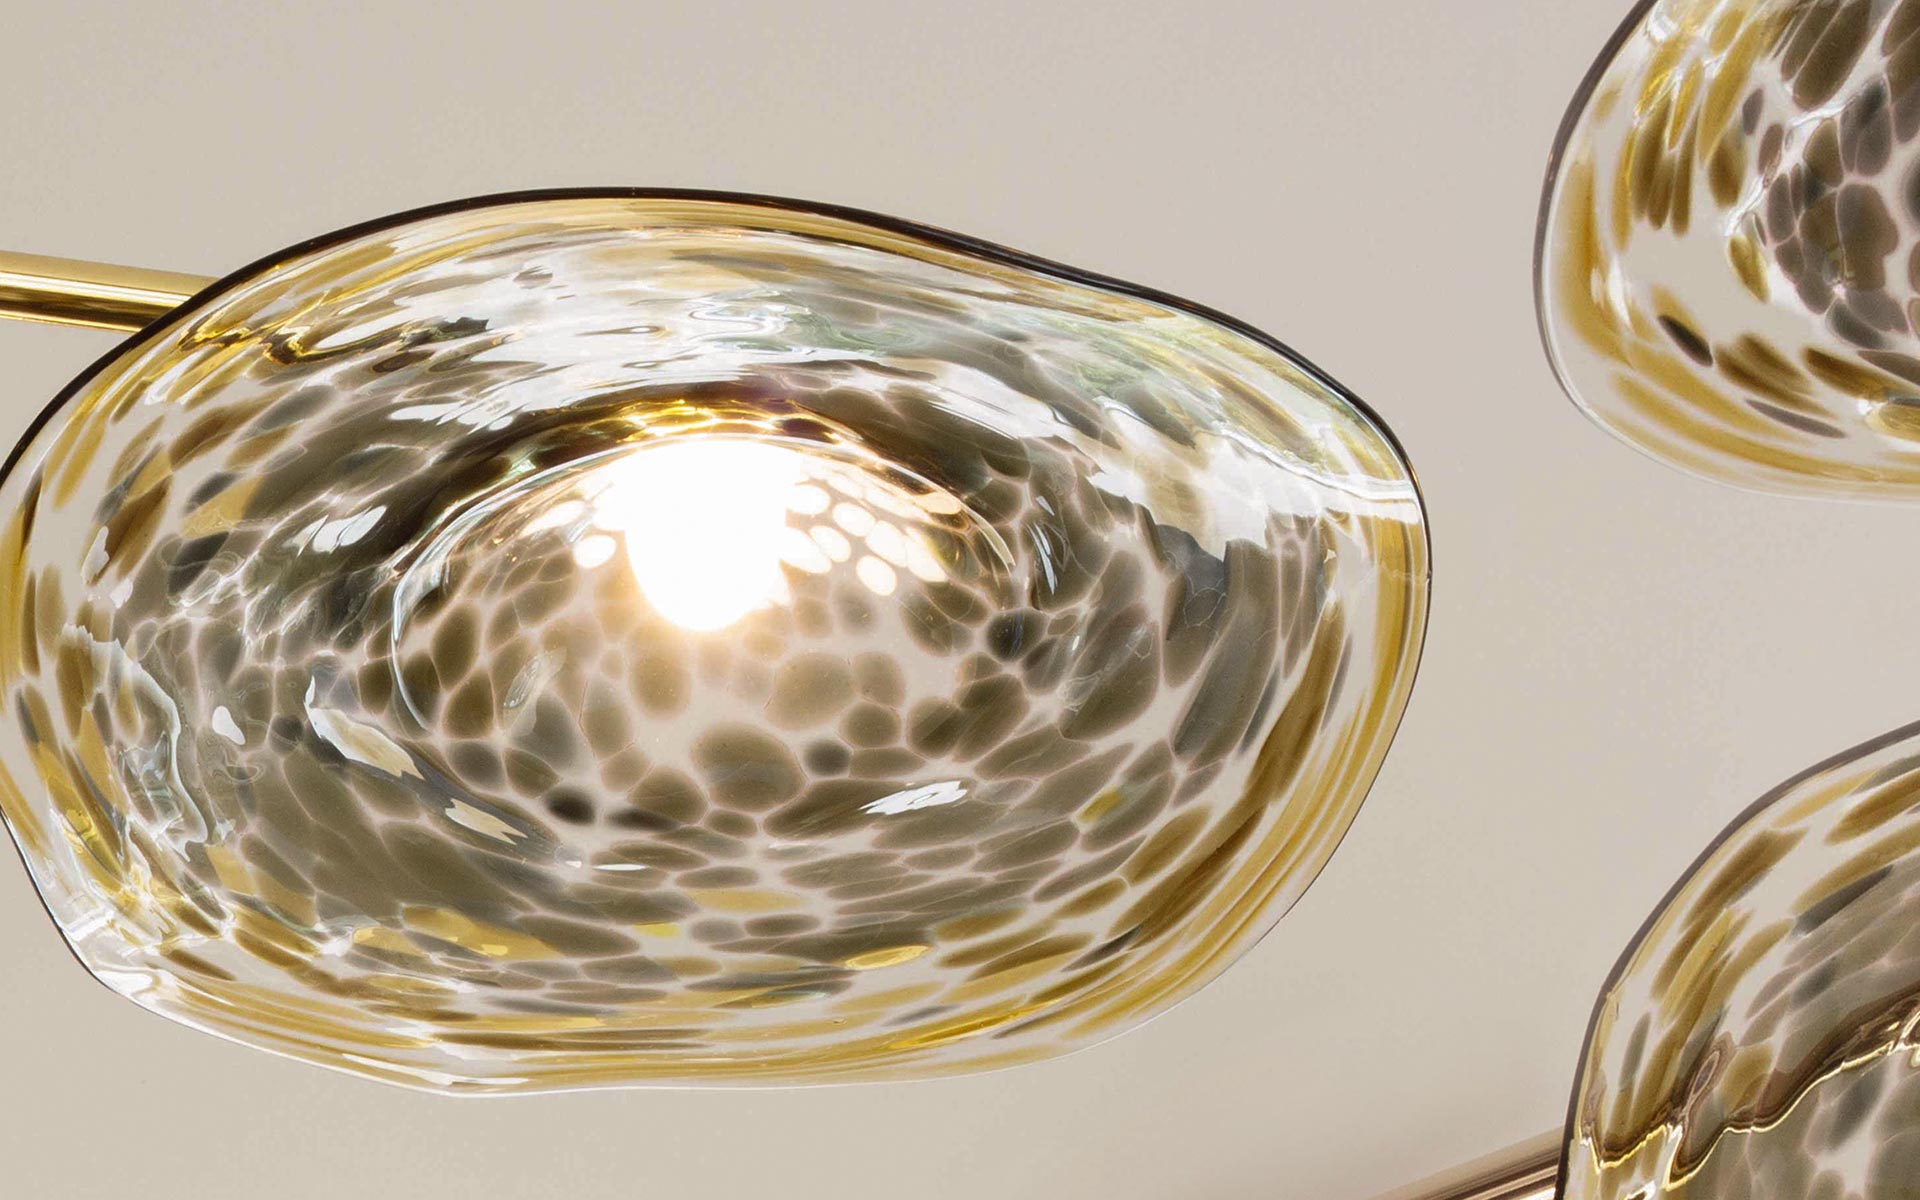 Handmade Glass Lamp Shades Olive Amber Tones Mottled Pattern Brass Framework Perla Pendant London Nulty Bespoke